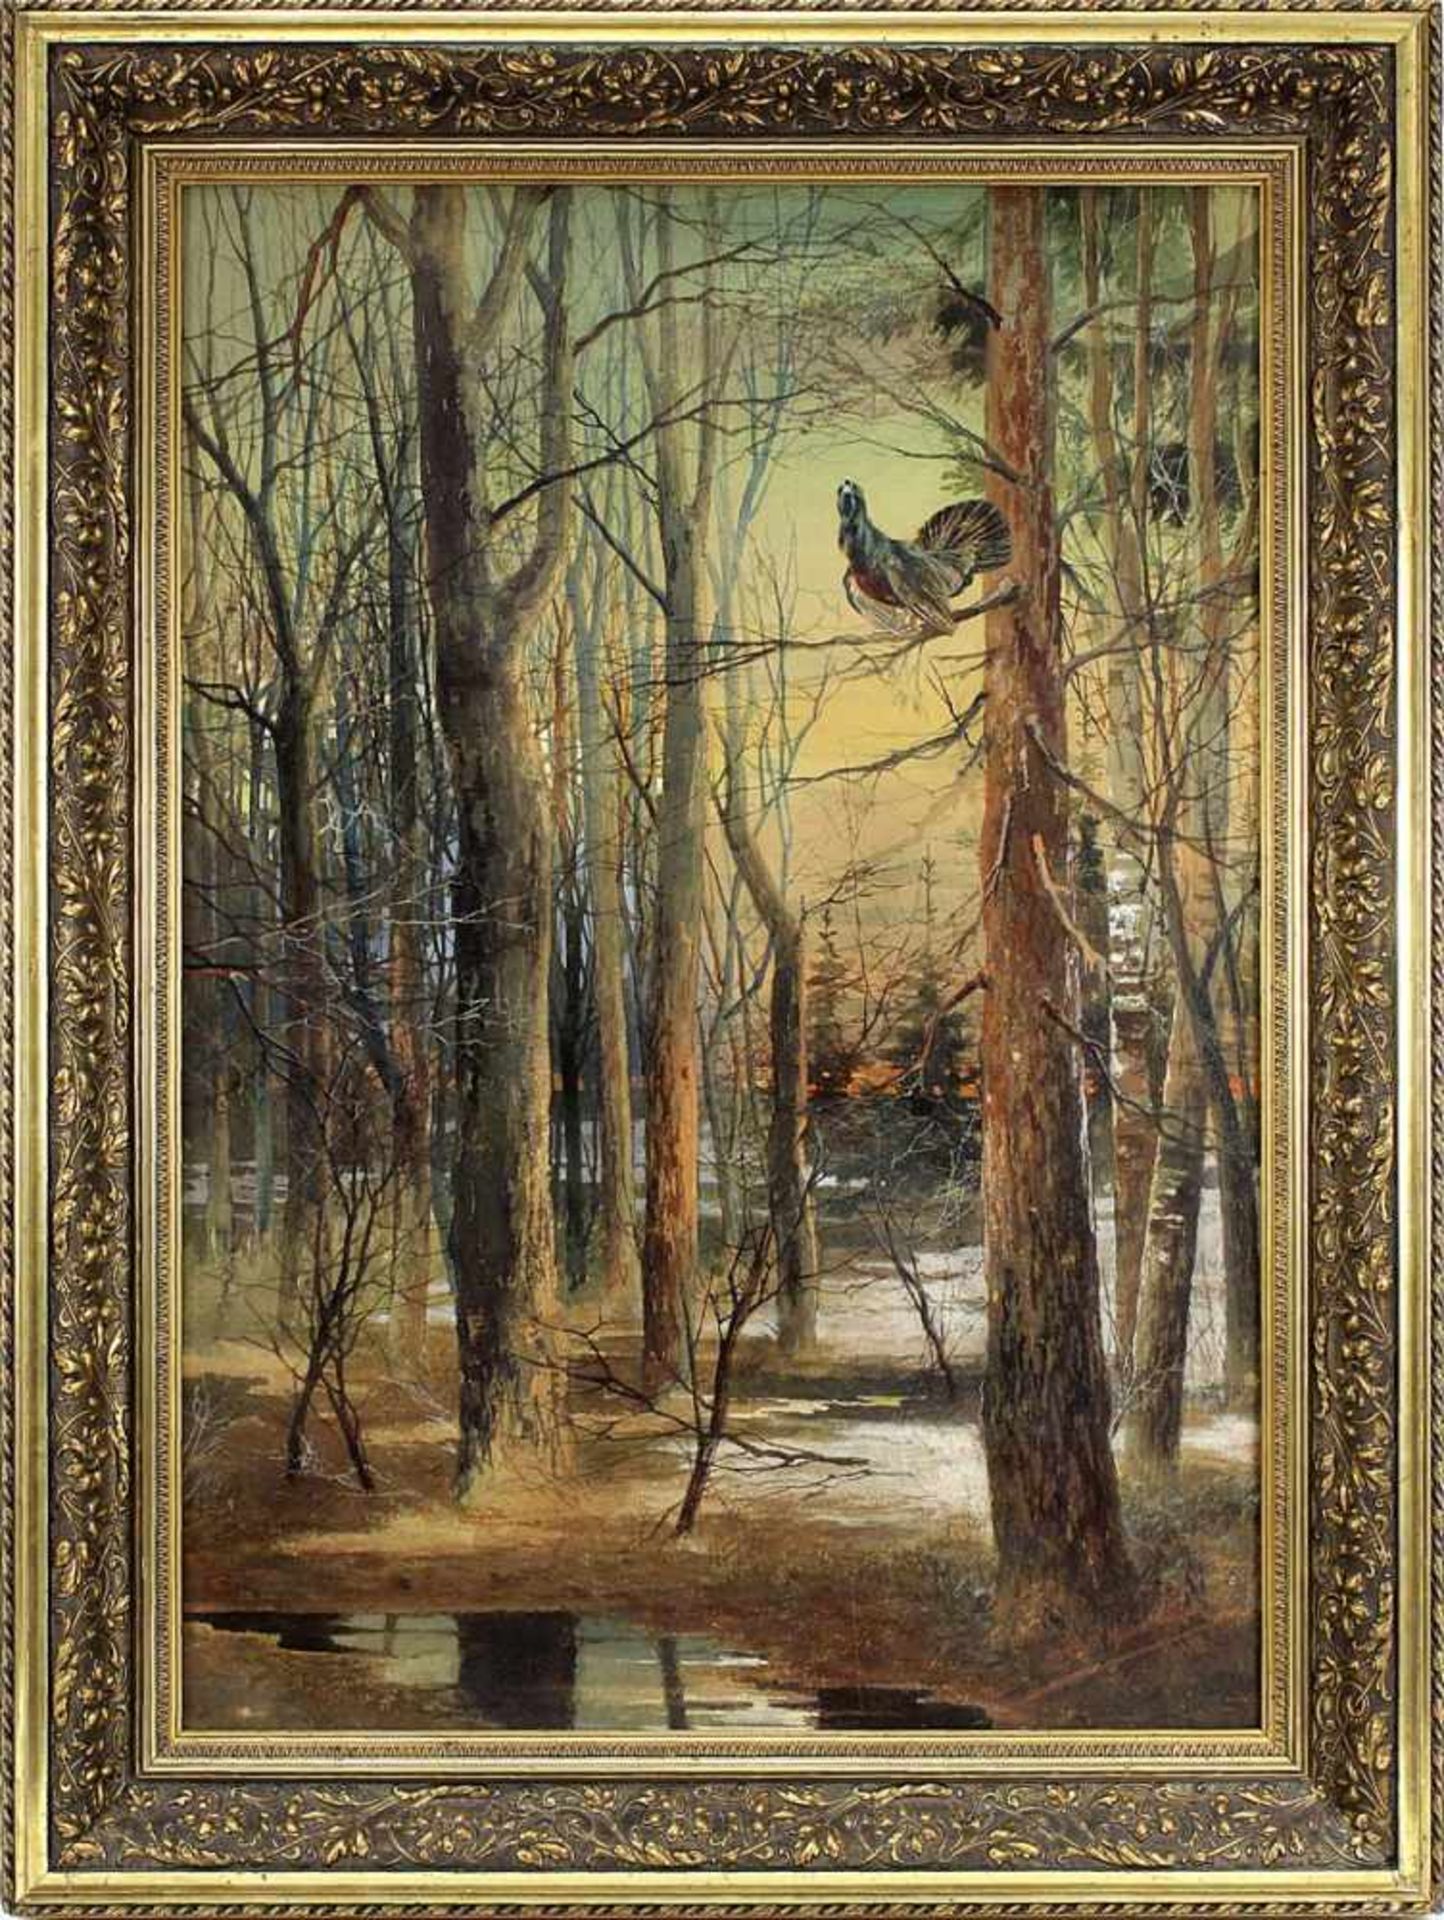 Russischer Maler (nach Einkaufsbeleg von 1967), Waldlandschaft mit Birkhahn, 1894, rechts unten